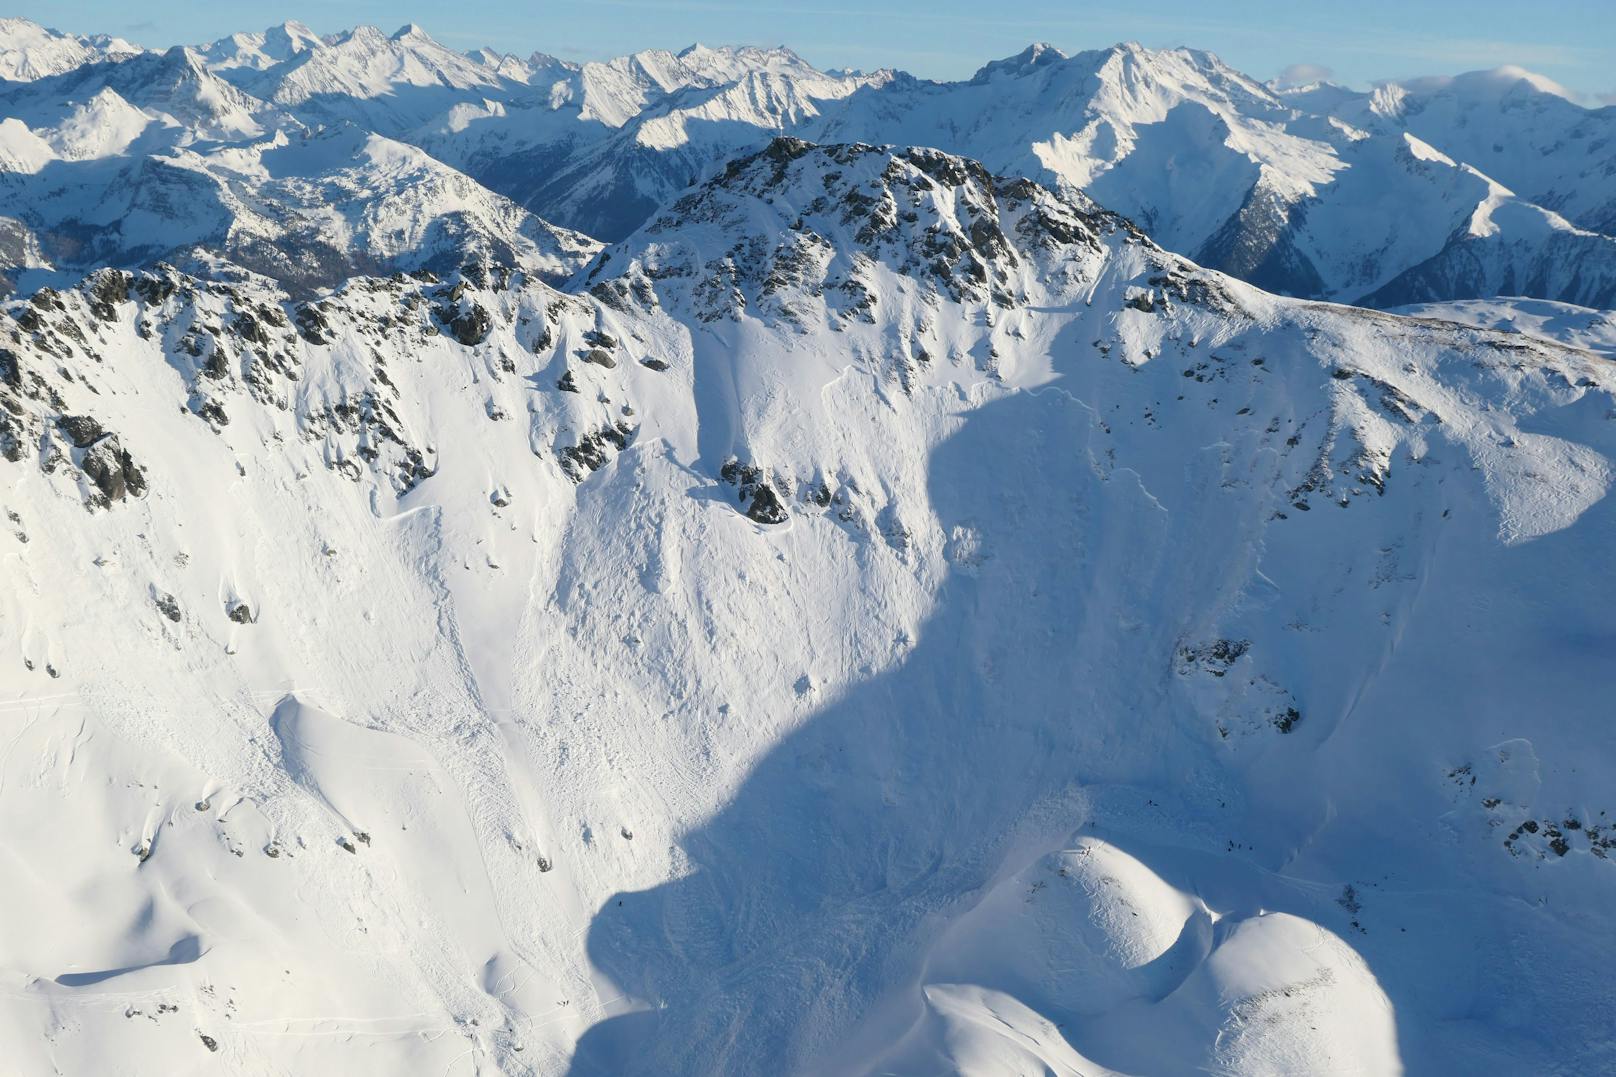 Ein Österreicher hat am Dienstag mit seinen Skiern in&nbsp;Fügenberg eine Lawine ausgelöst. Der 25-Jährige wurde komplett verschüttet und von dem Schneebrett 200 Meter mitgerissen.